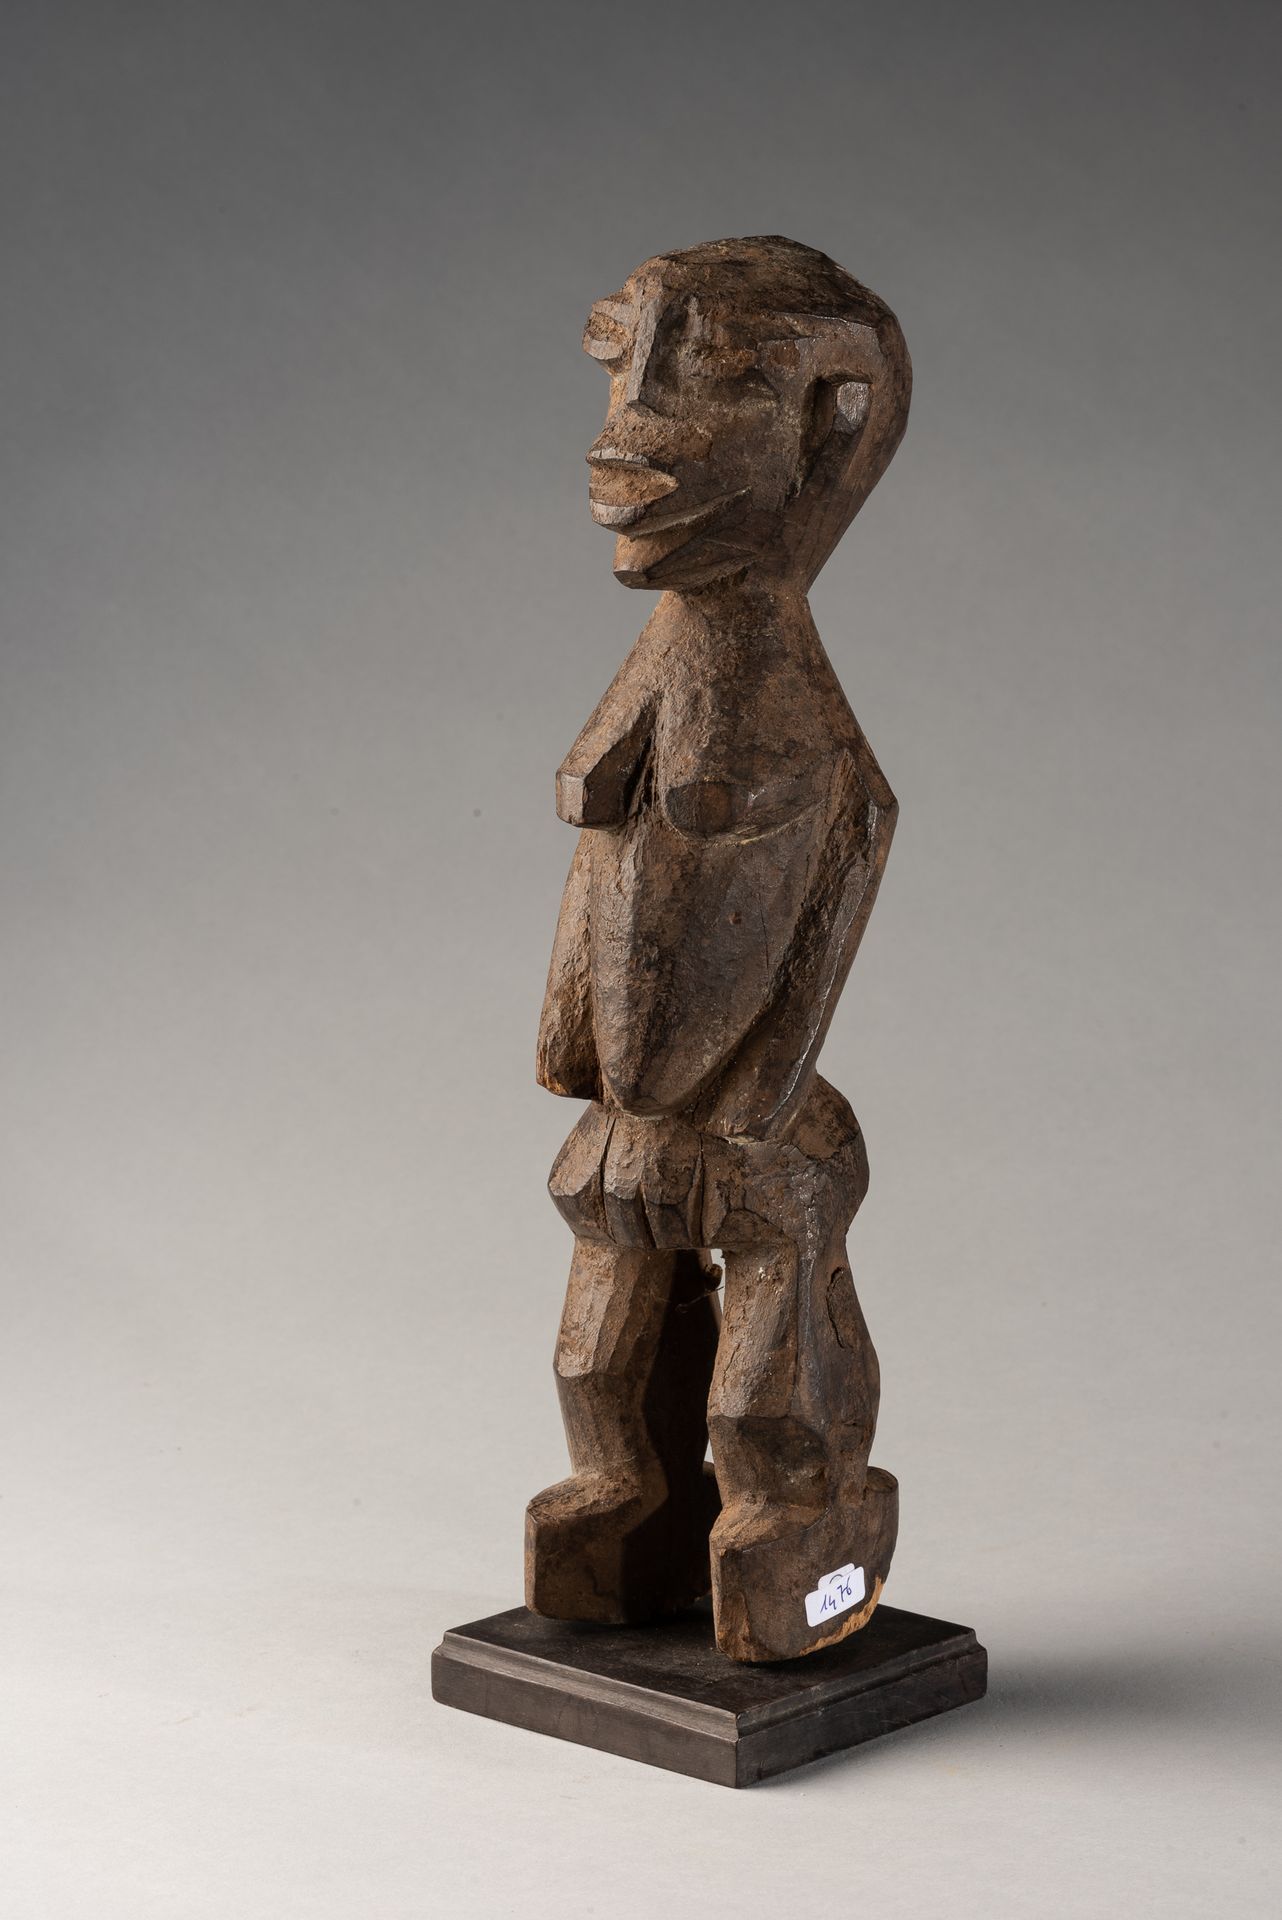 Peuple lobi 木制雕像，洛比人，布基纳法索 - 20世纪中期 34 x 7 x 7.5